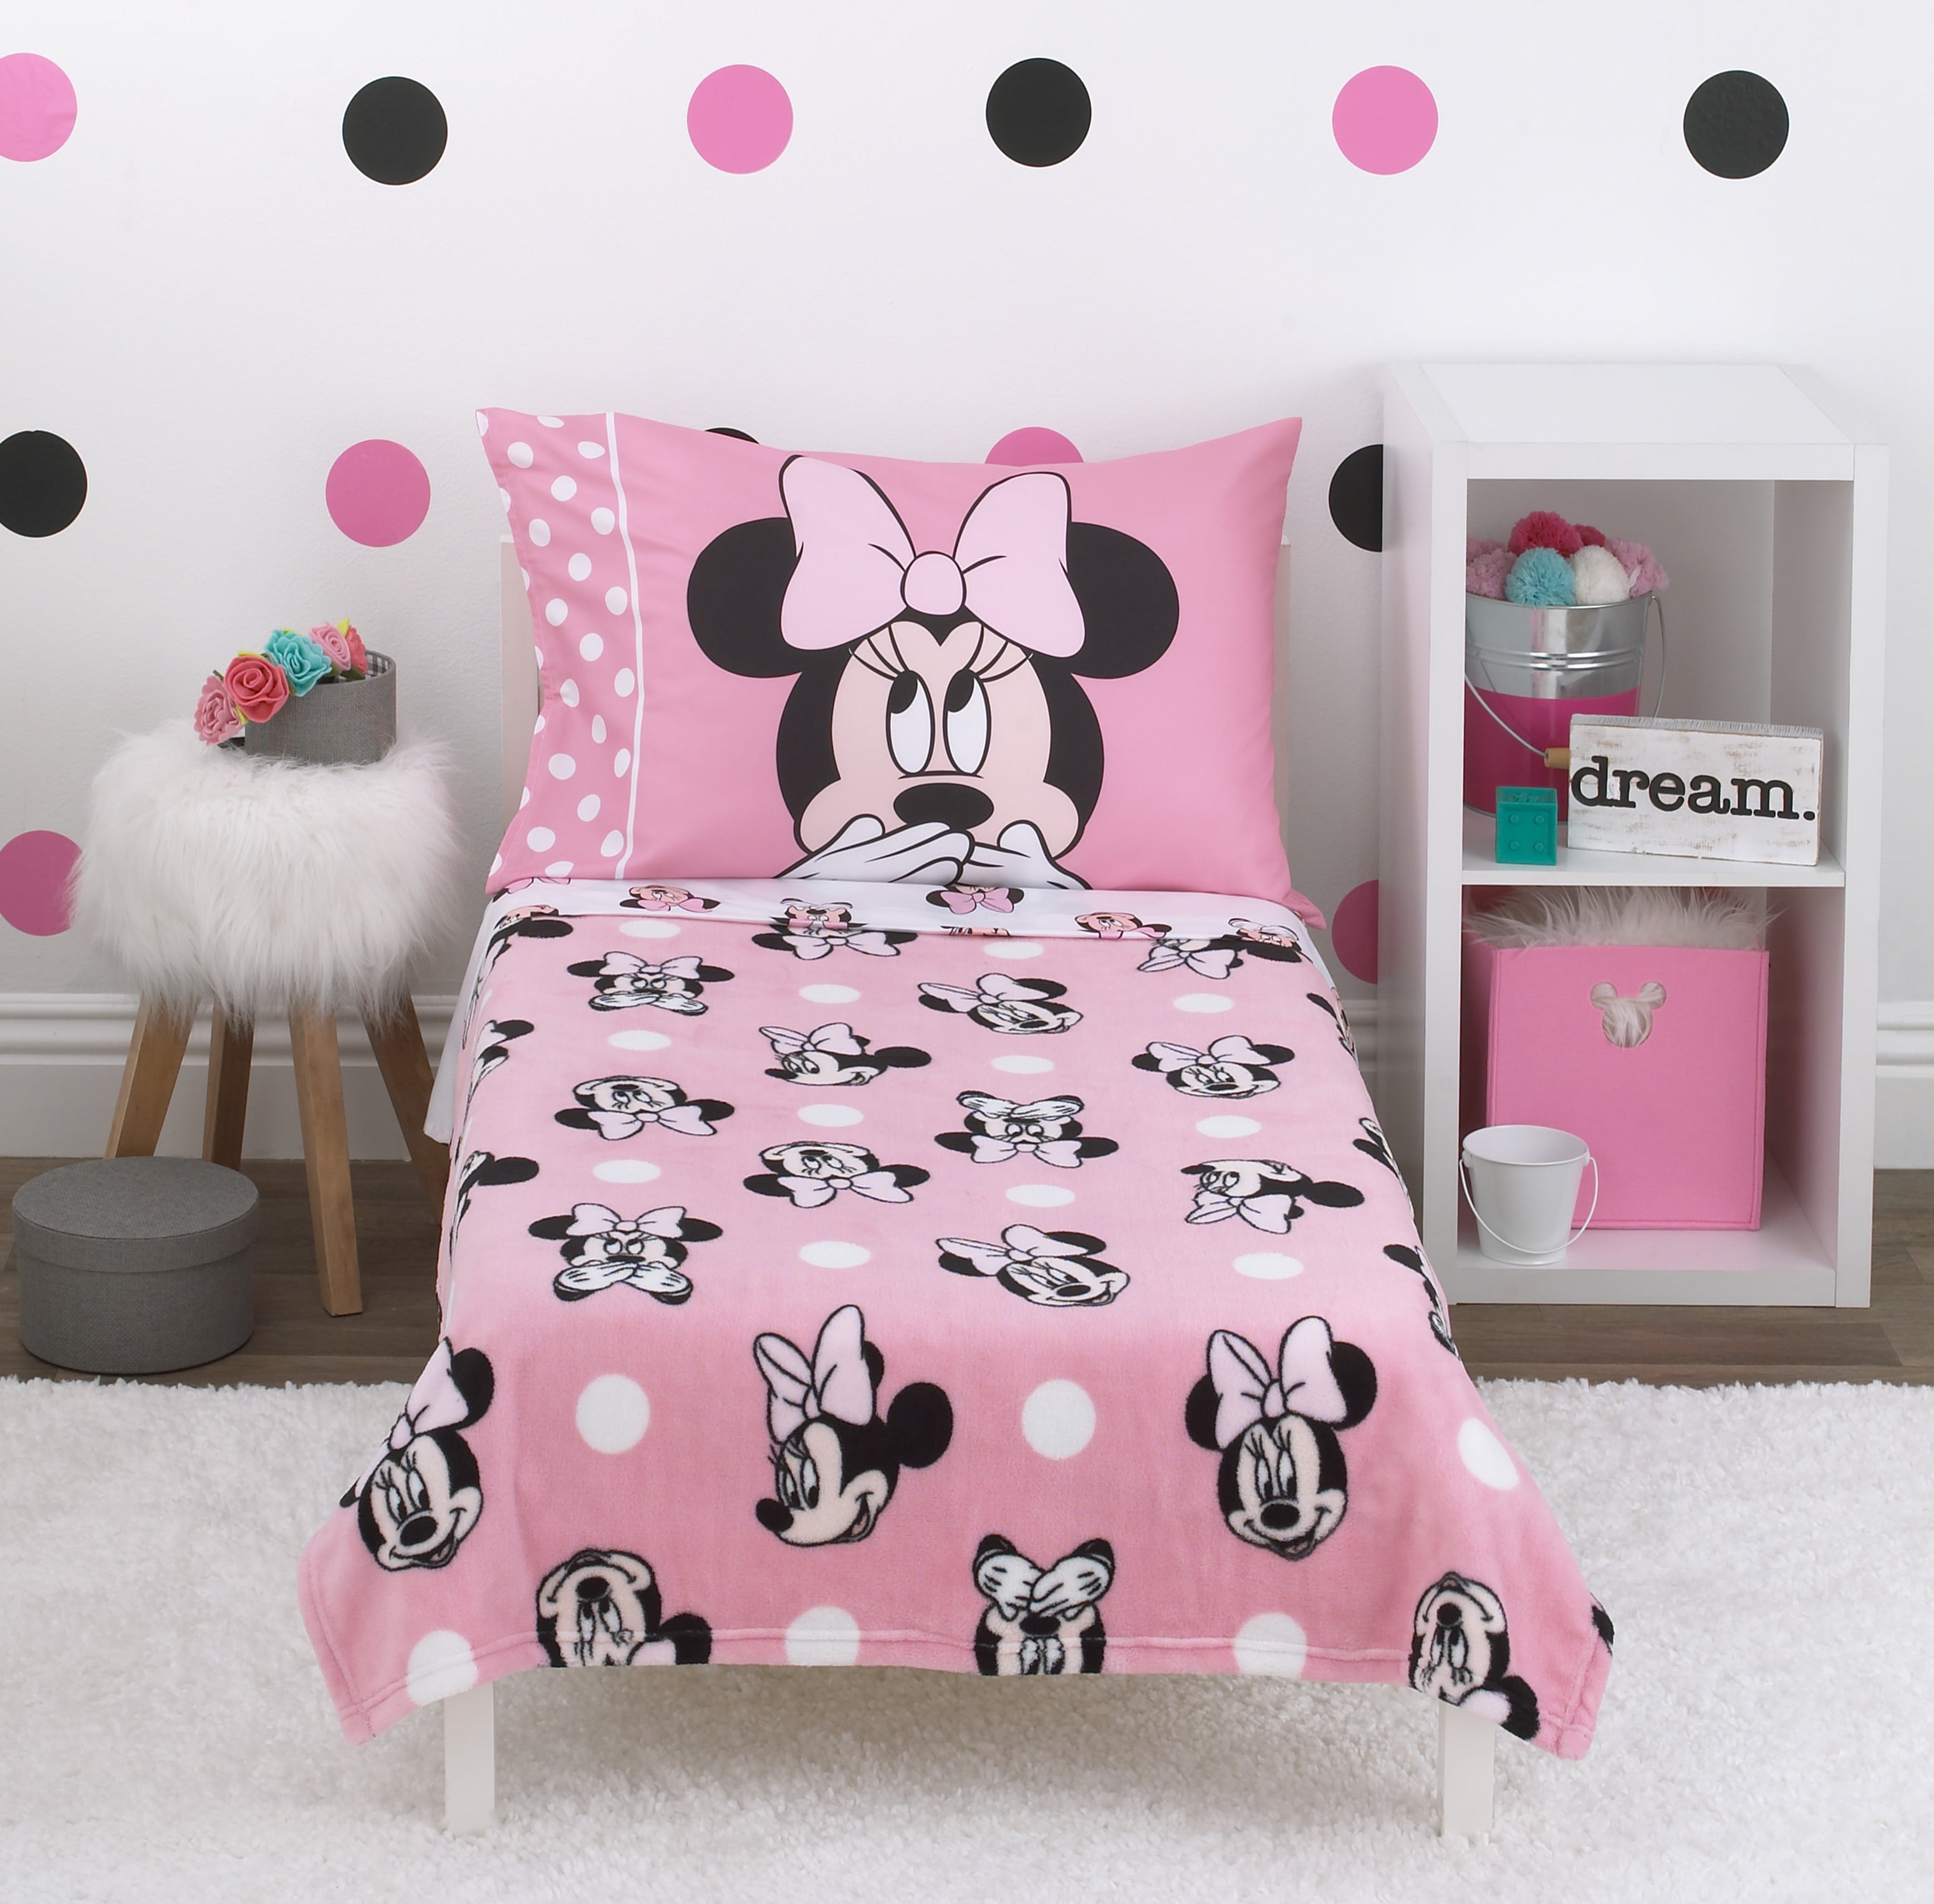 Official Disney Minnie Mouse Papillon Junior Duvet Cover Set Children's 